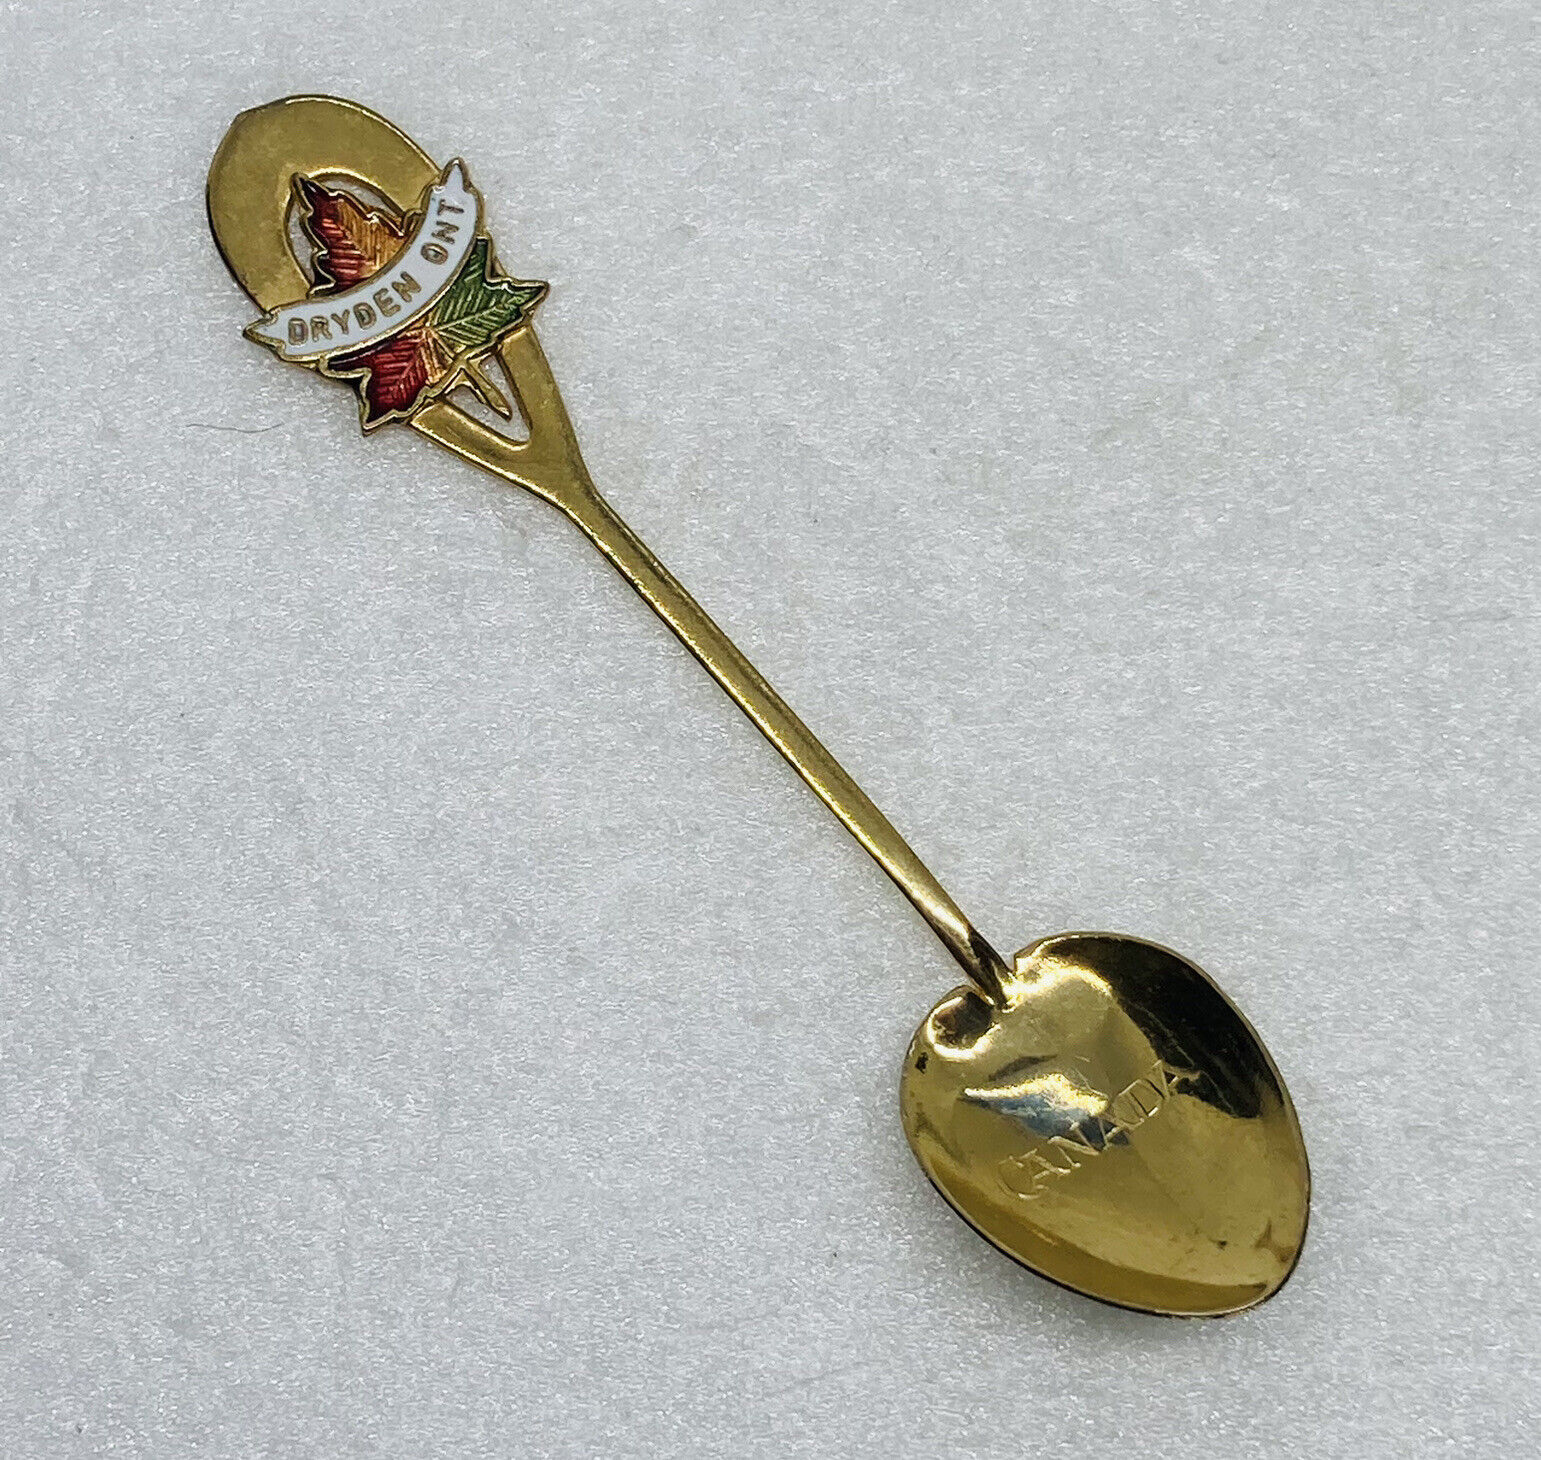 Vintage 1980s Canada Dryden Ontario Enamel Spoon Souvenir 4” Maple Leaf Art 25